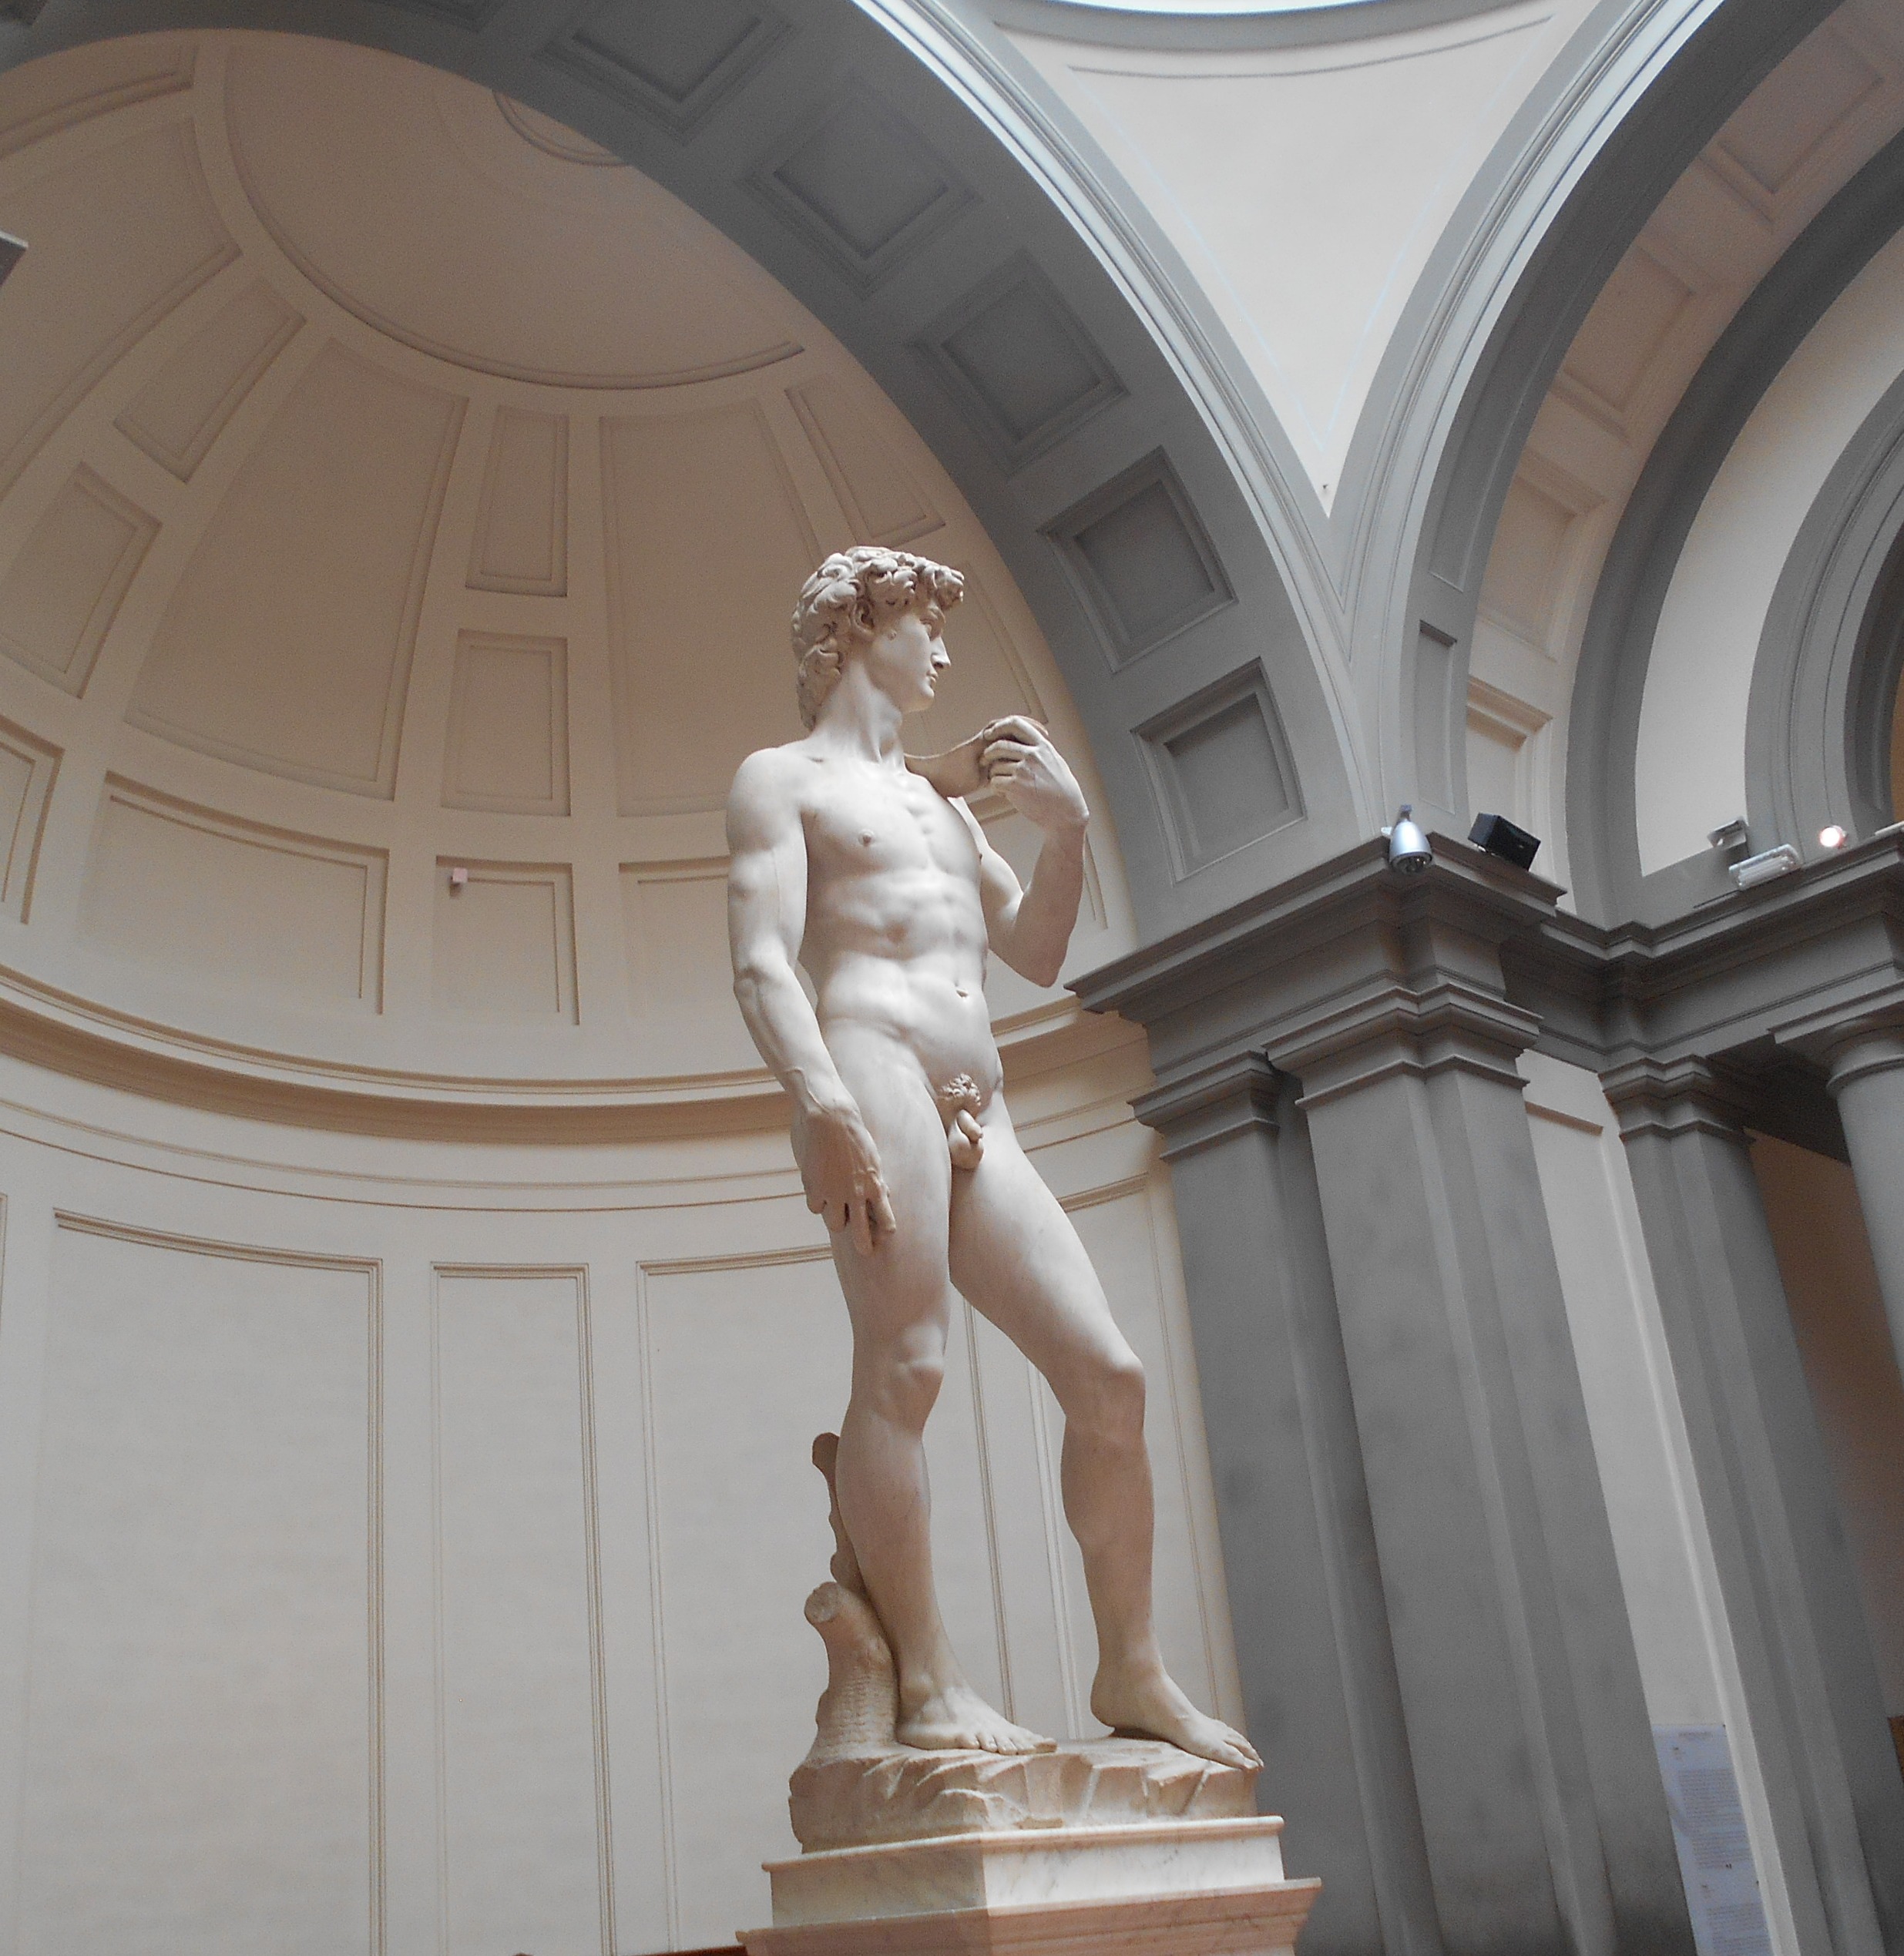 David di Michelangelo, Gallerie dell'Accademia